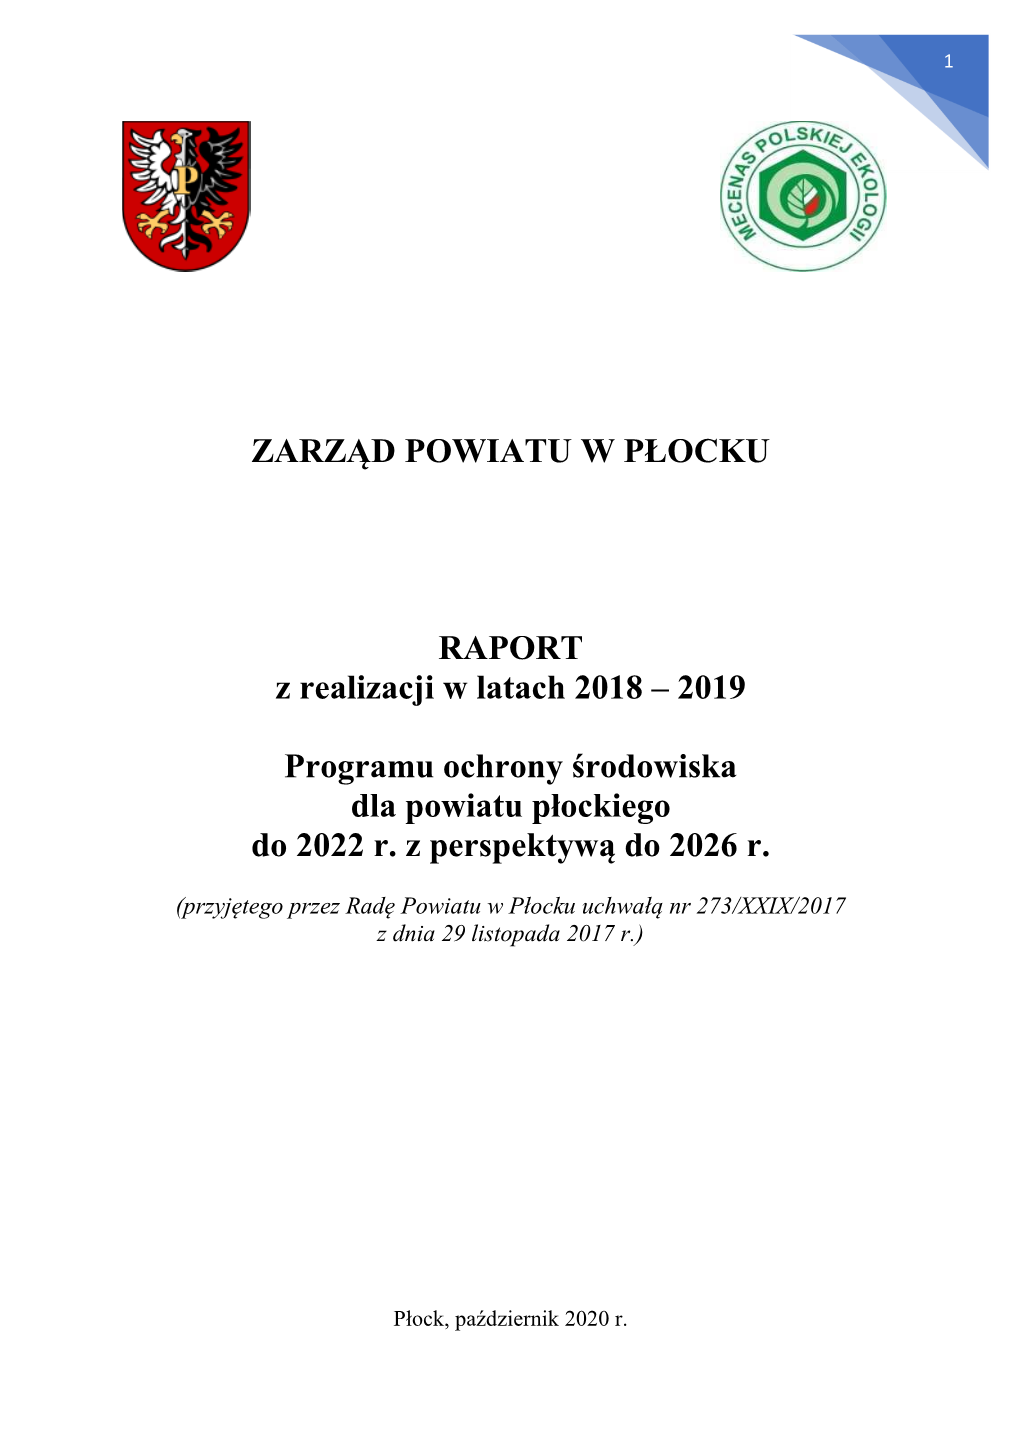 ZARZĄD POWIATU W PŁOCKU RAPORT Z Realizacji W Latach 2018